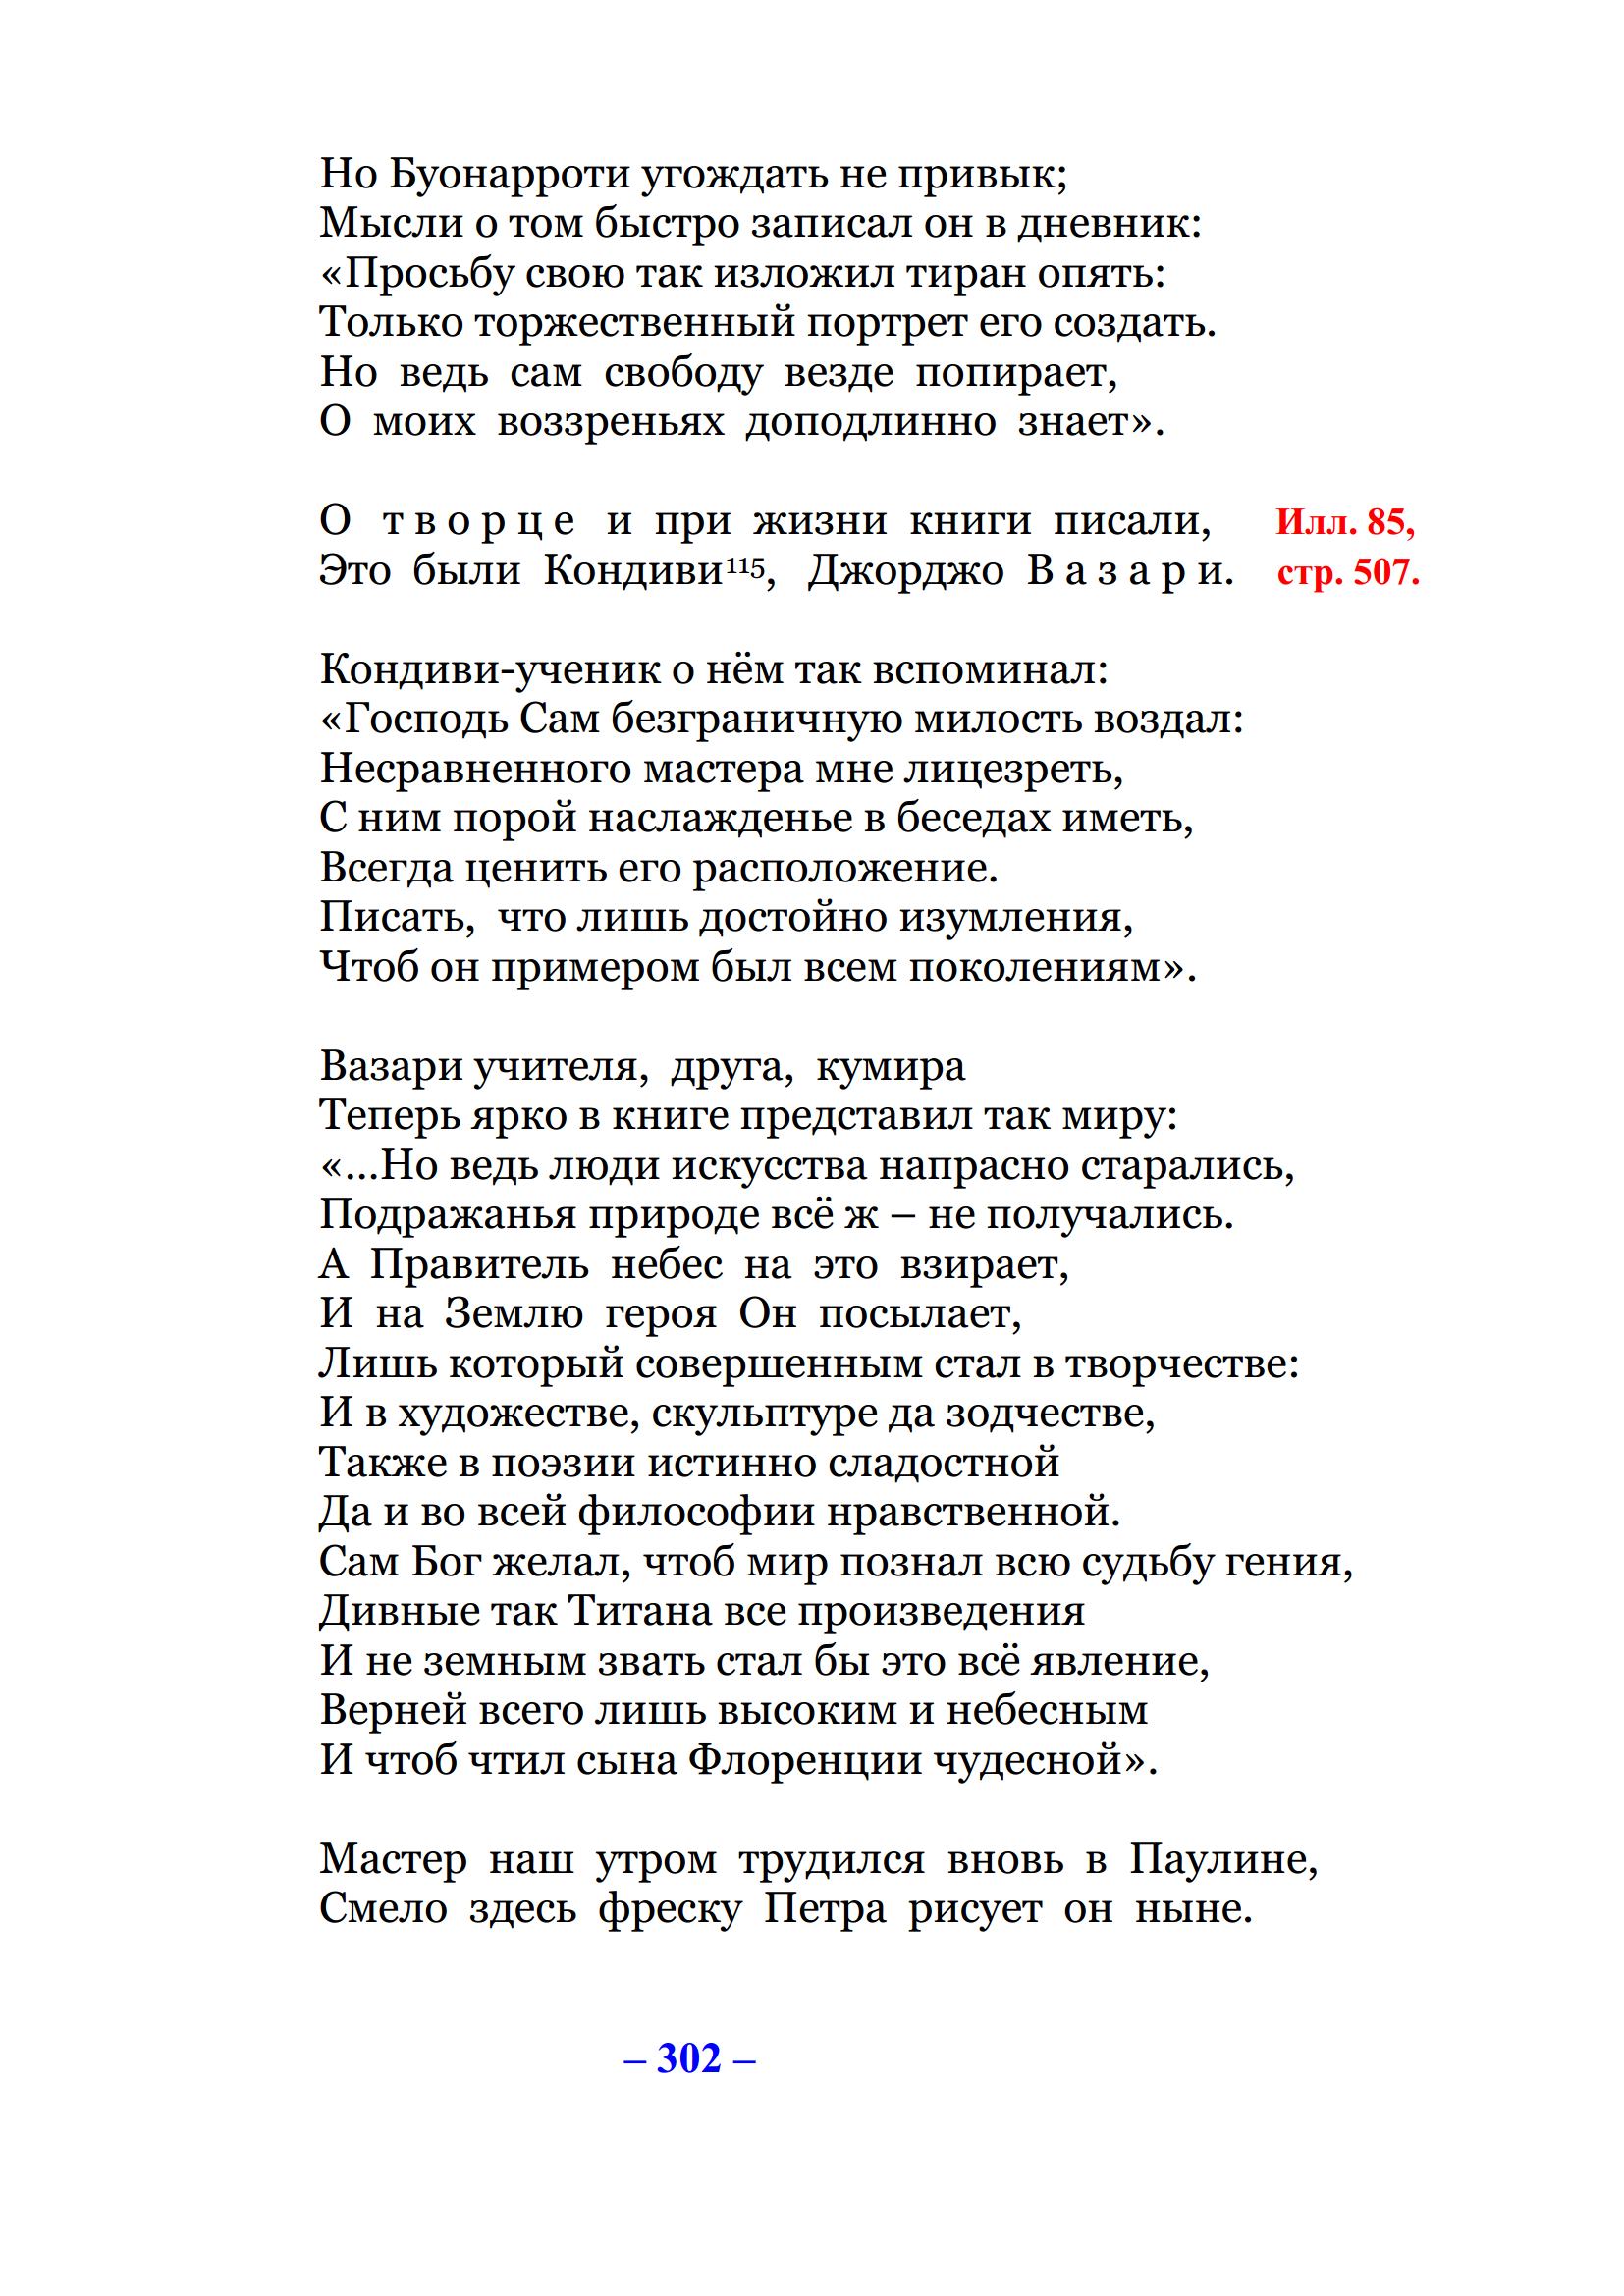 Микеланджело: героическая поэма / В. Ф. Козлов. — 2-е издание, дополненное и переработанное. — Ижевск, 2013